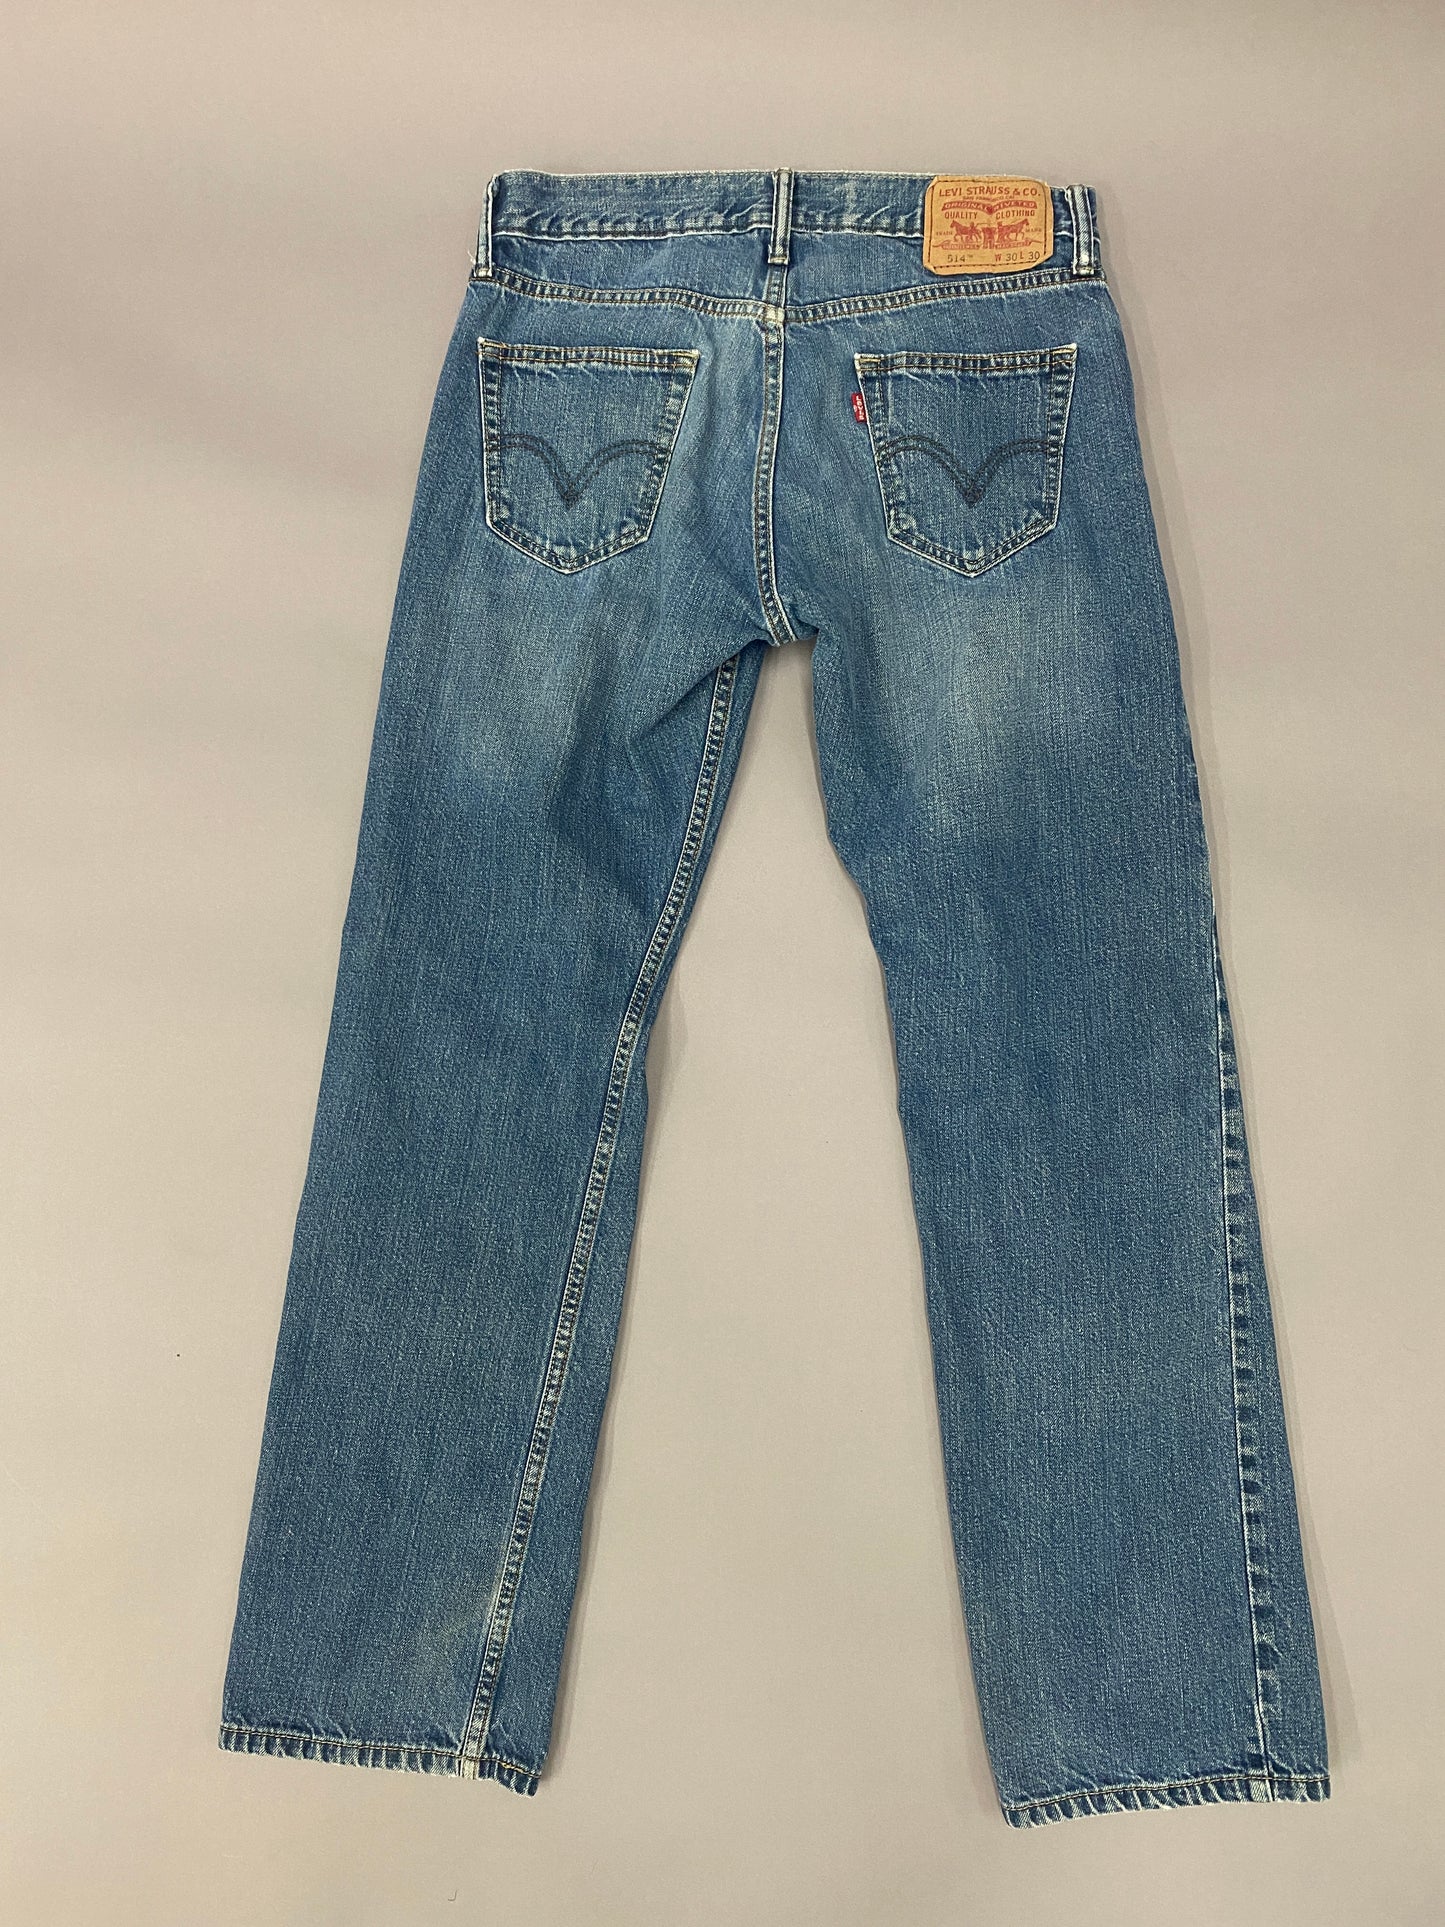 Levi's 514 Jeans - 30x30